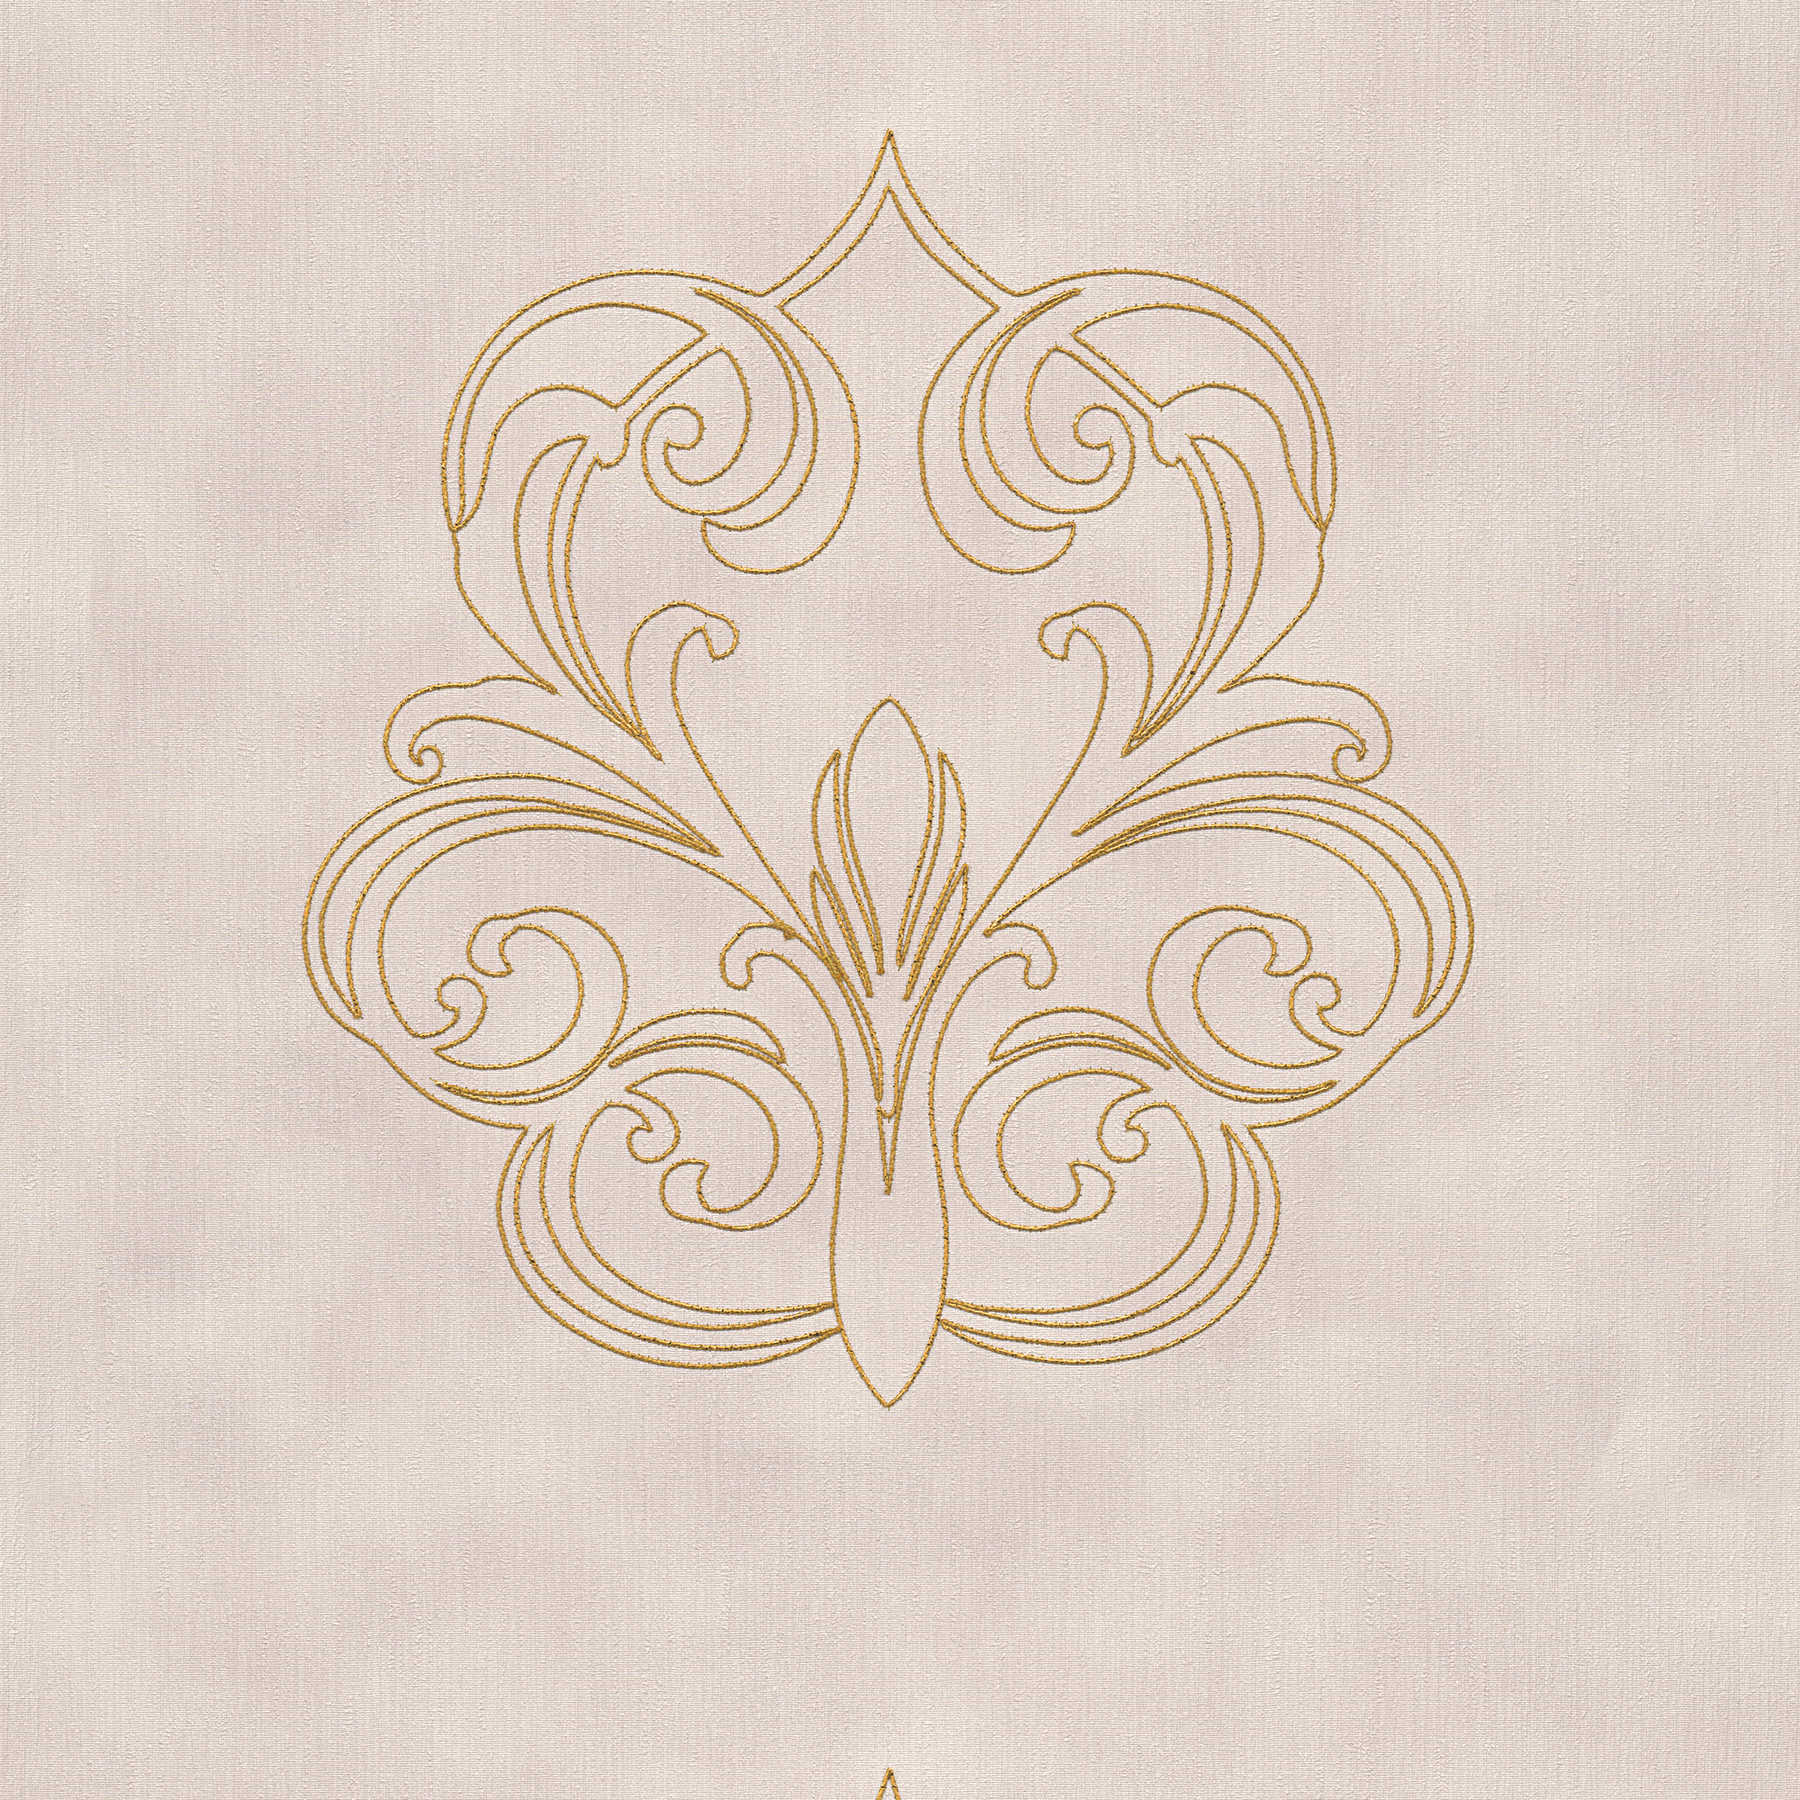             Pannello Premium con ornamenti barocchi - Viola, oro
        